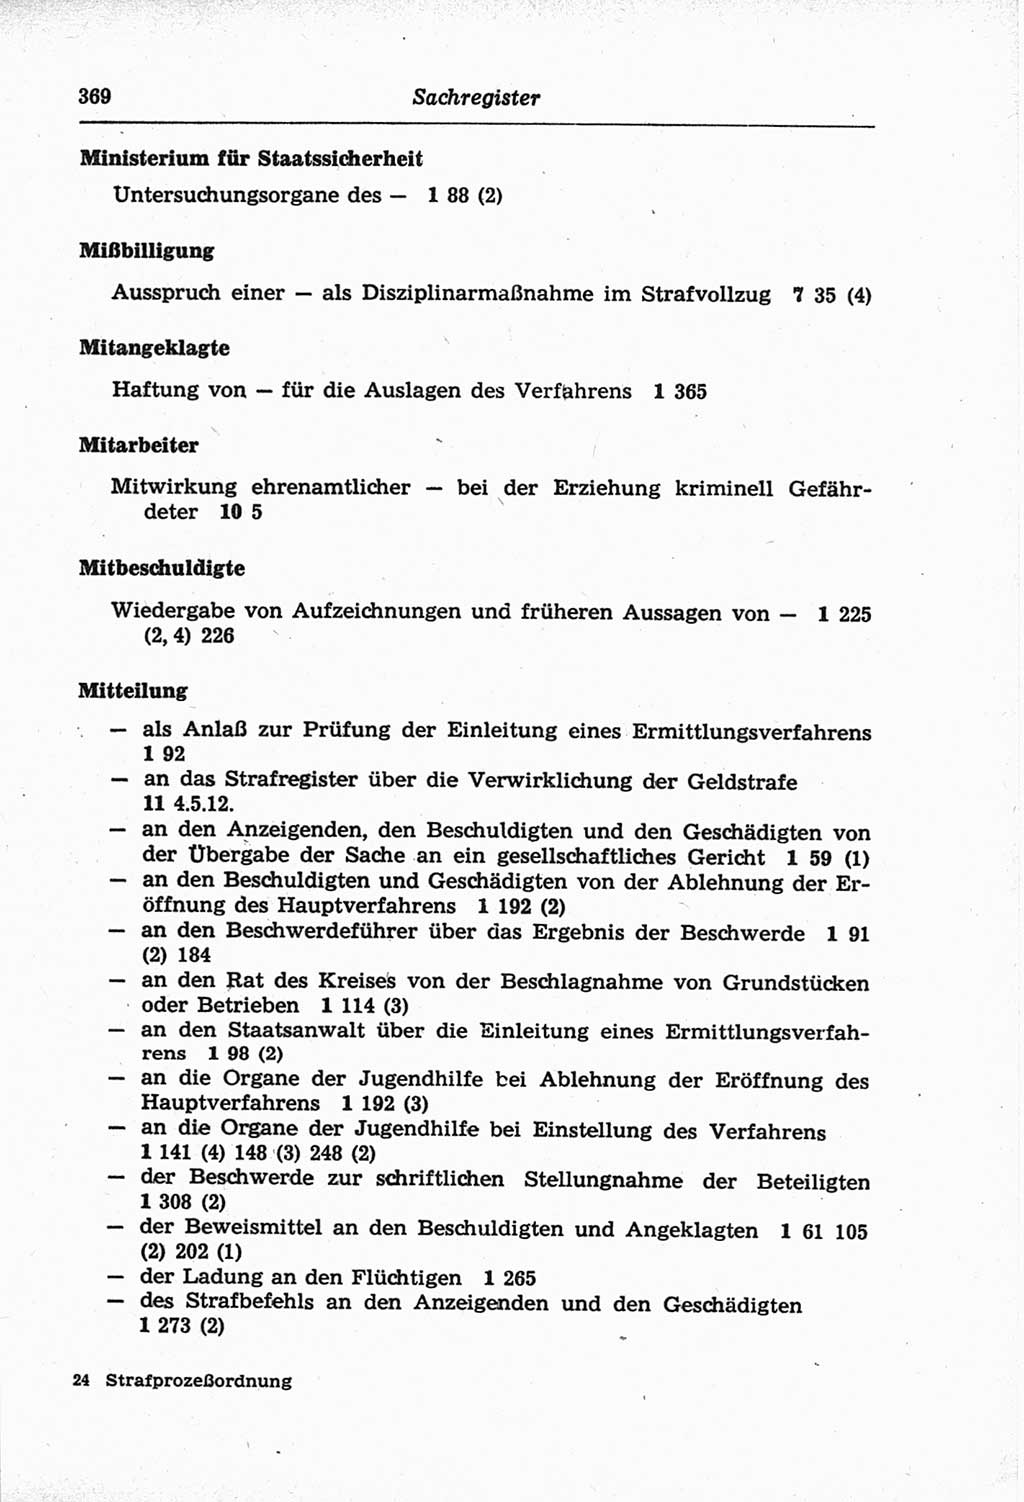 Strafprozeßordnung (StPO) der Deutschen Demokratischen Republik (DDR) und angrenzende Gesetze und Bestimmungen 1968, Seite 369 (StPO Ges. Bstgn. DDR 1968, S. 369)